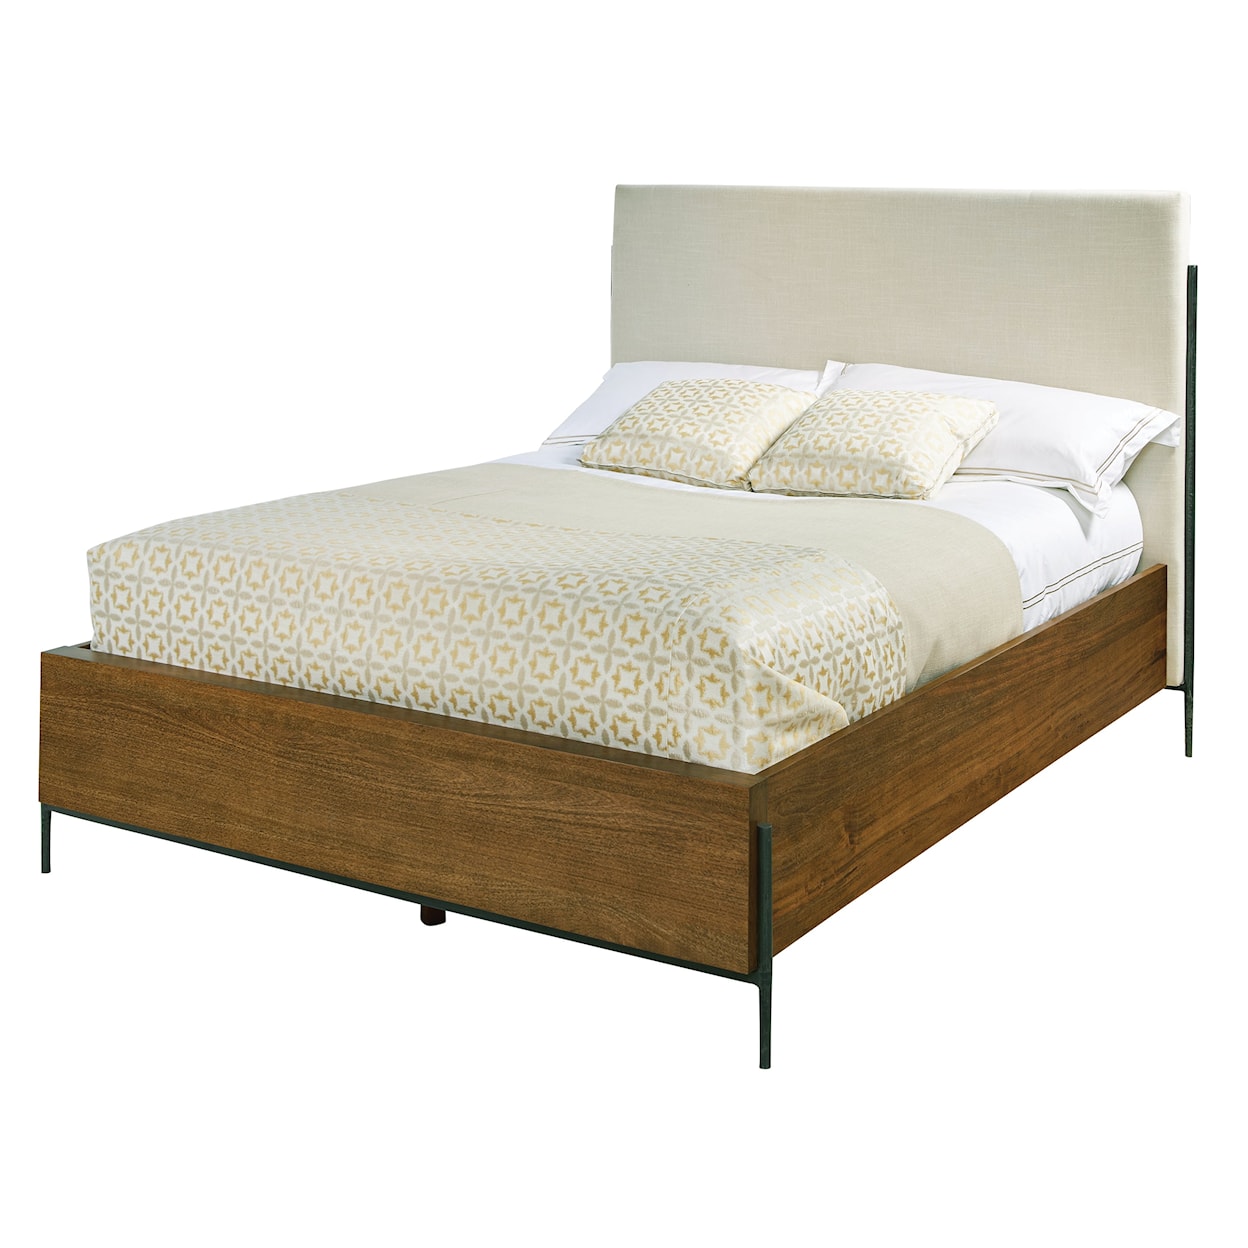 Hekman Bedford Park King Upholstered Bed